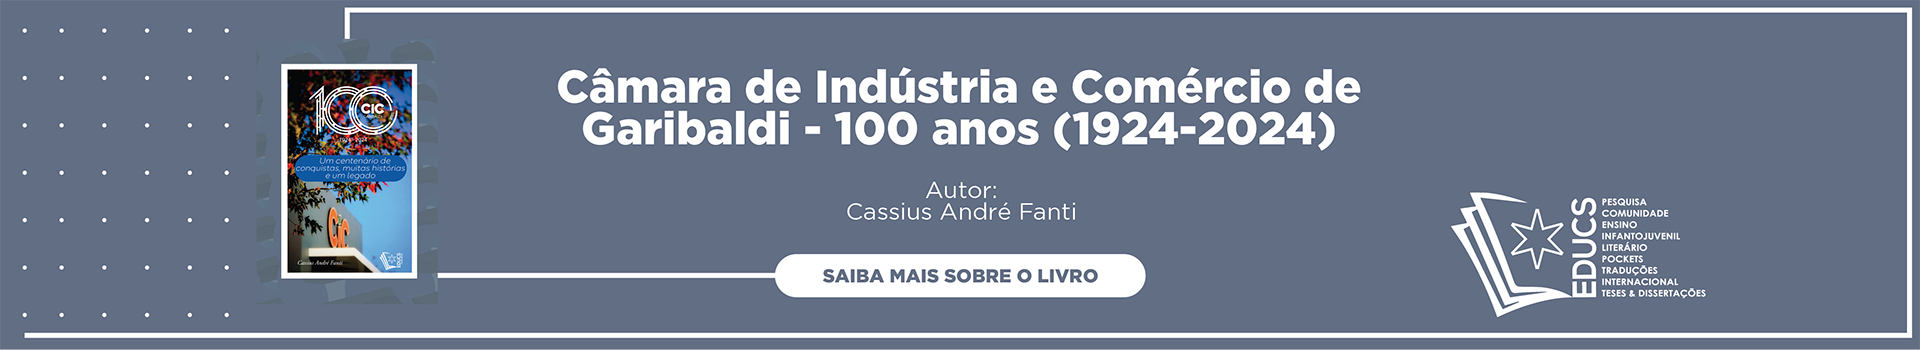 Câmara de Indústria e Comércio de Garibaldi - 100 anos (1924-2024)